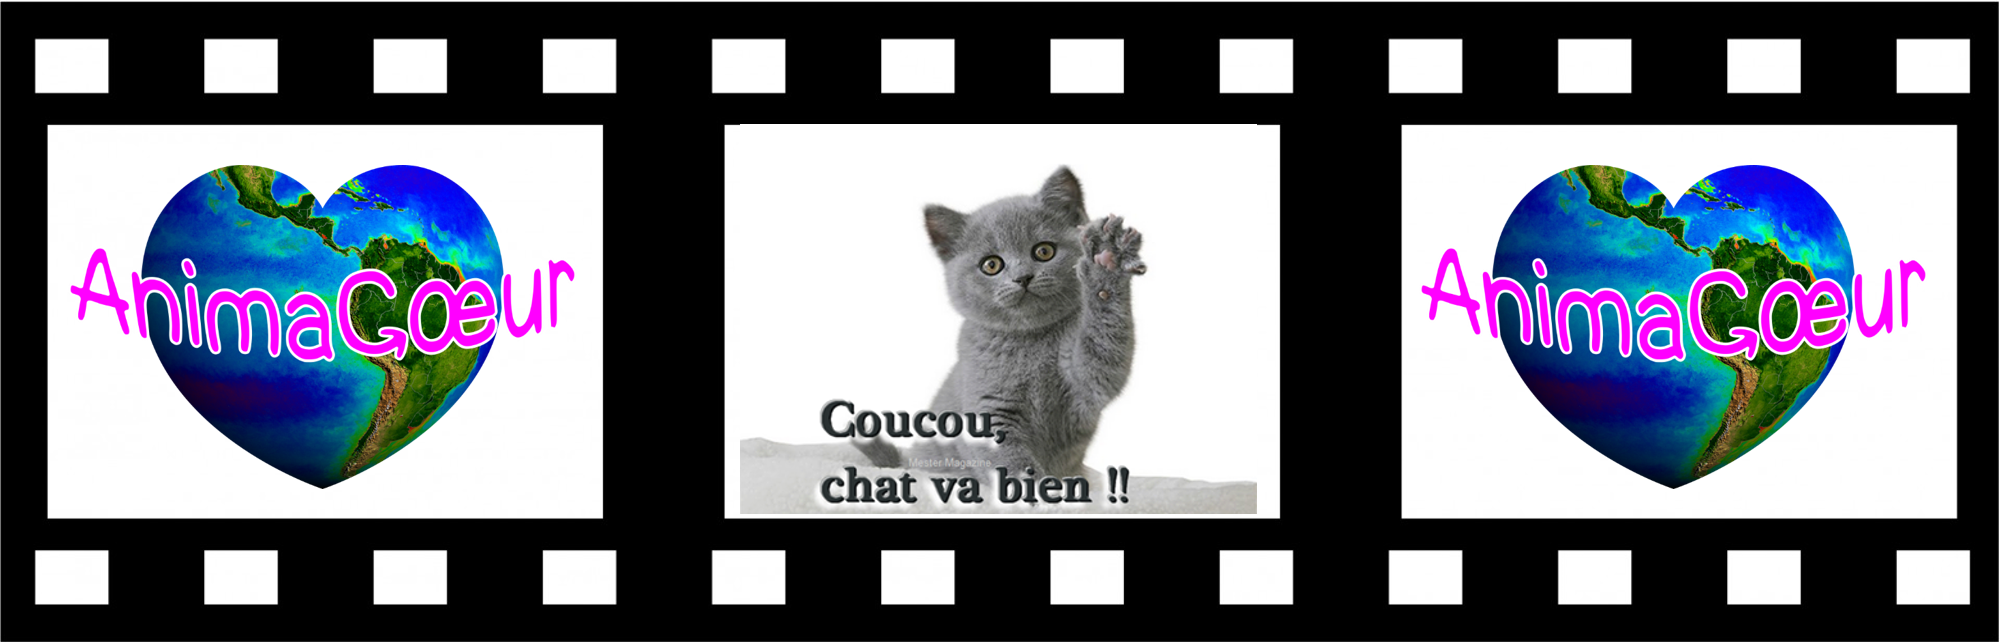 Coucou_Chat_va_bien